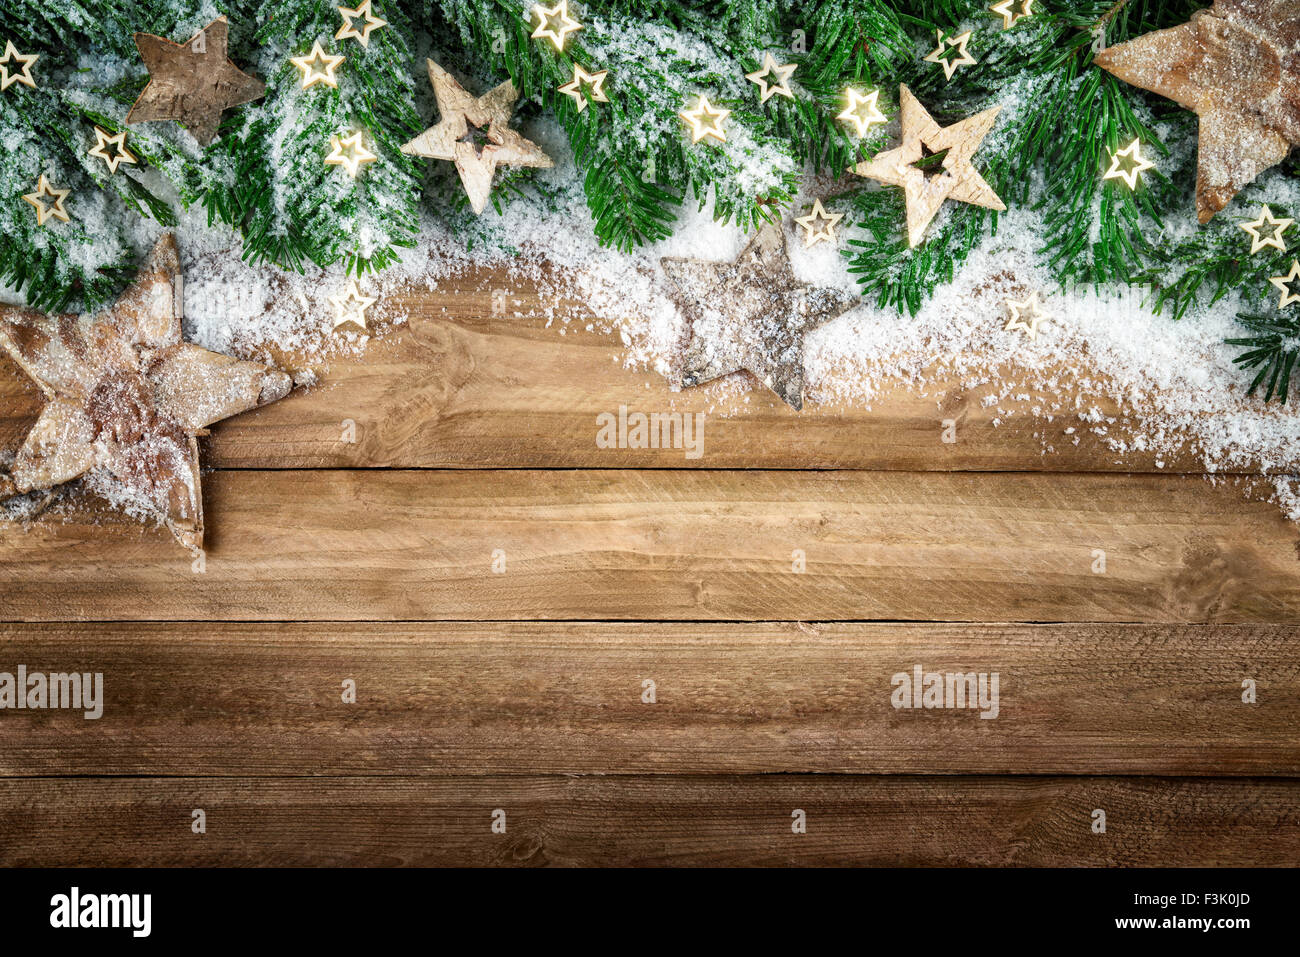 Weihnachten Hintergrund in Holz-Stil, rustikal, schlicht und elegant, mit einem Rand von Tannenzweigen, Sterne aus Holz und Schnee Stockfoto